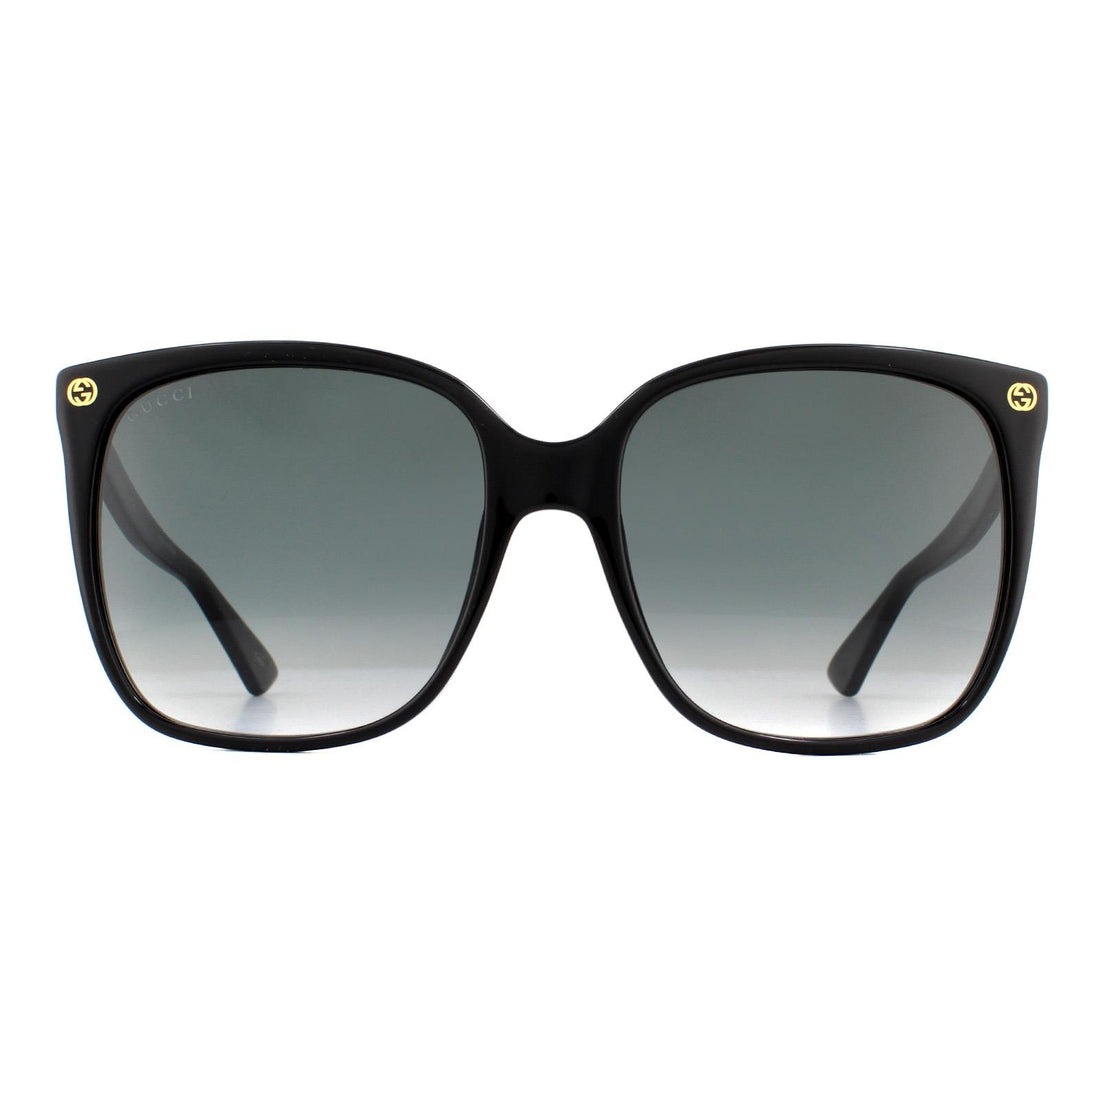 Gucci GG0022S Sunglasses Black Grey Gradient